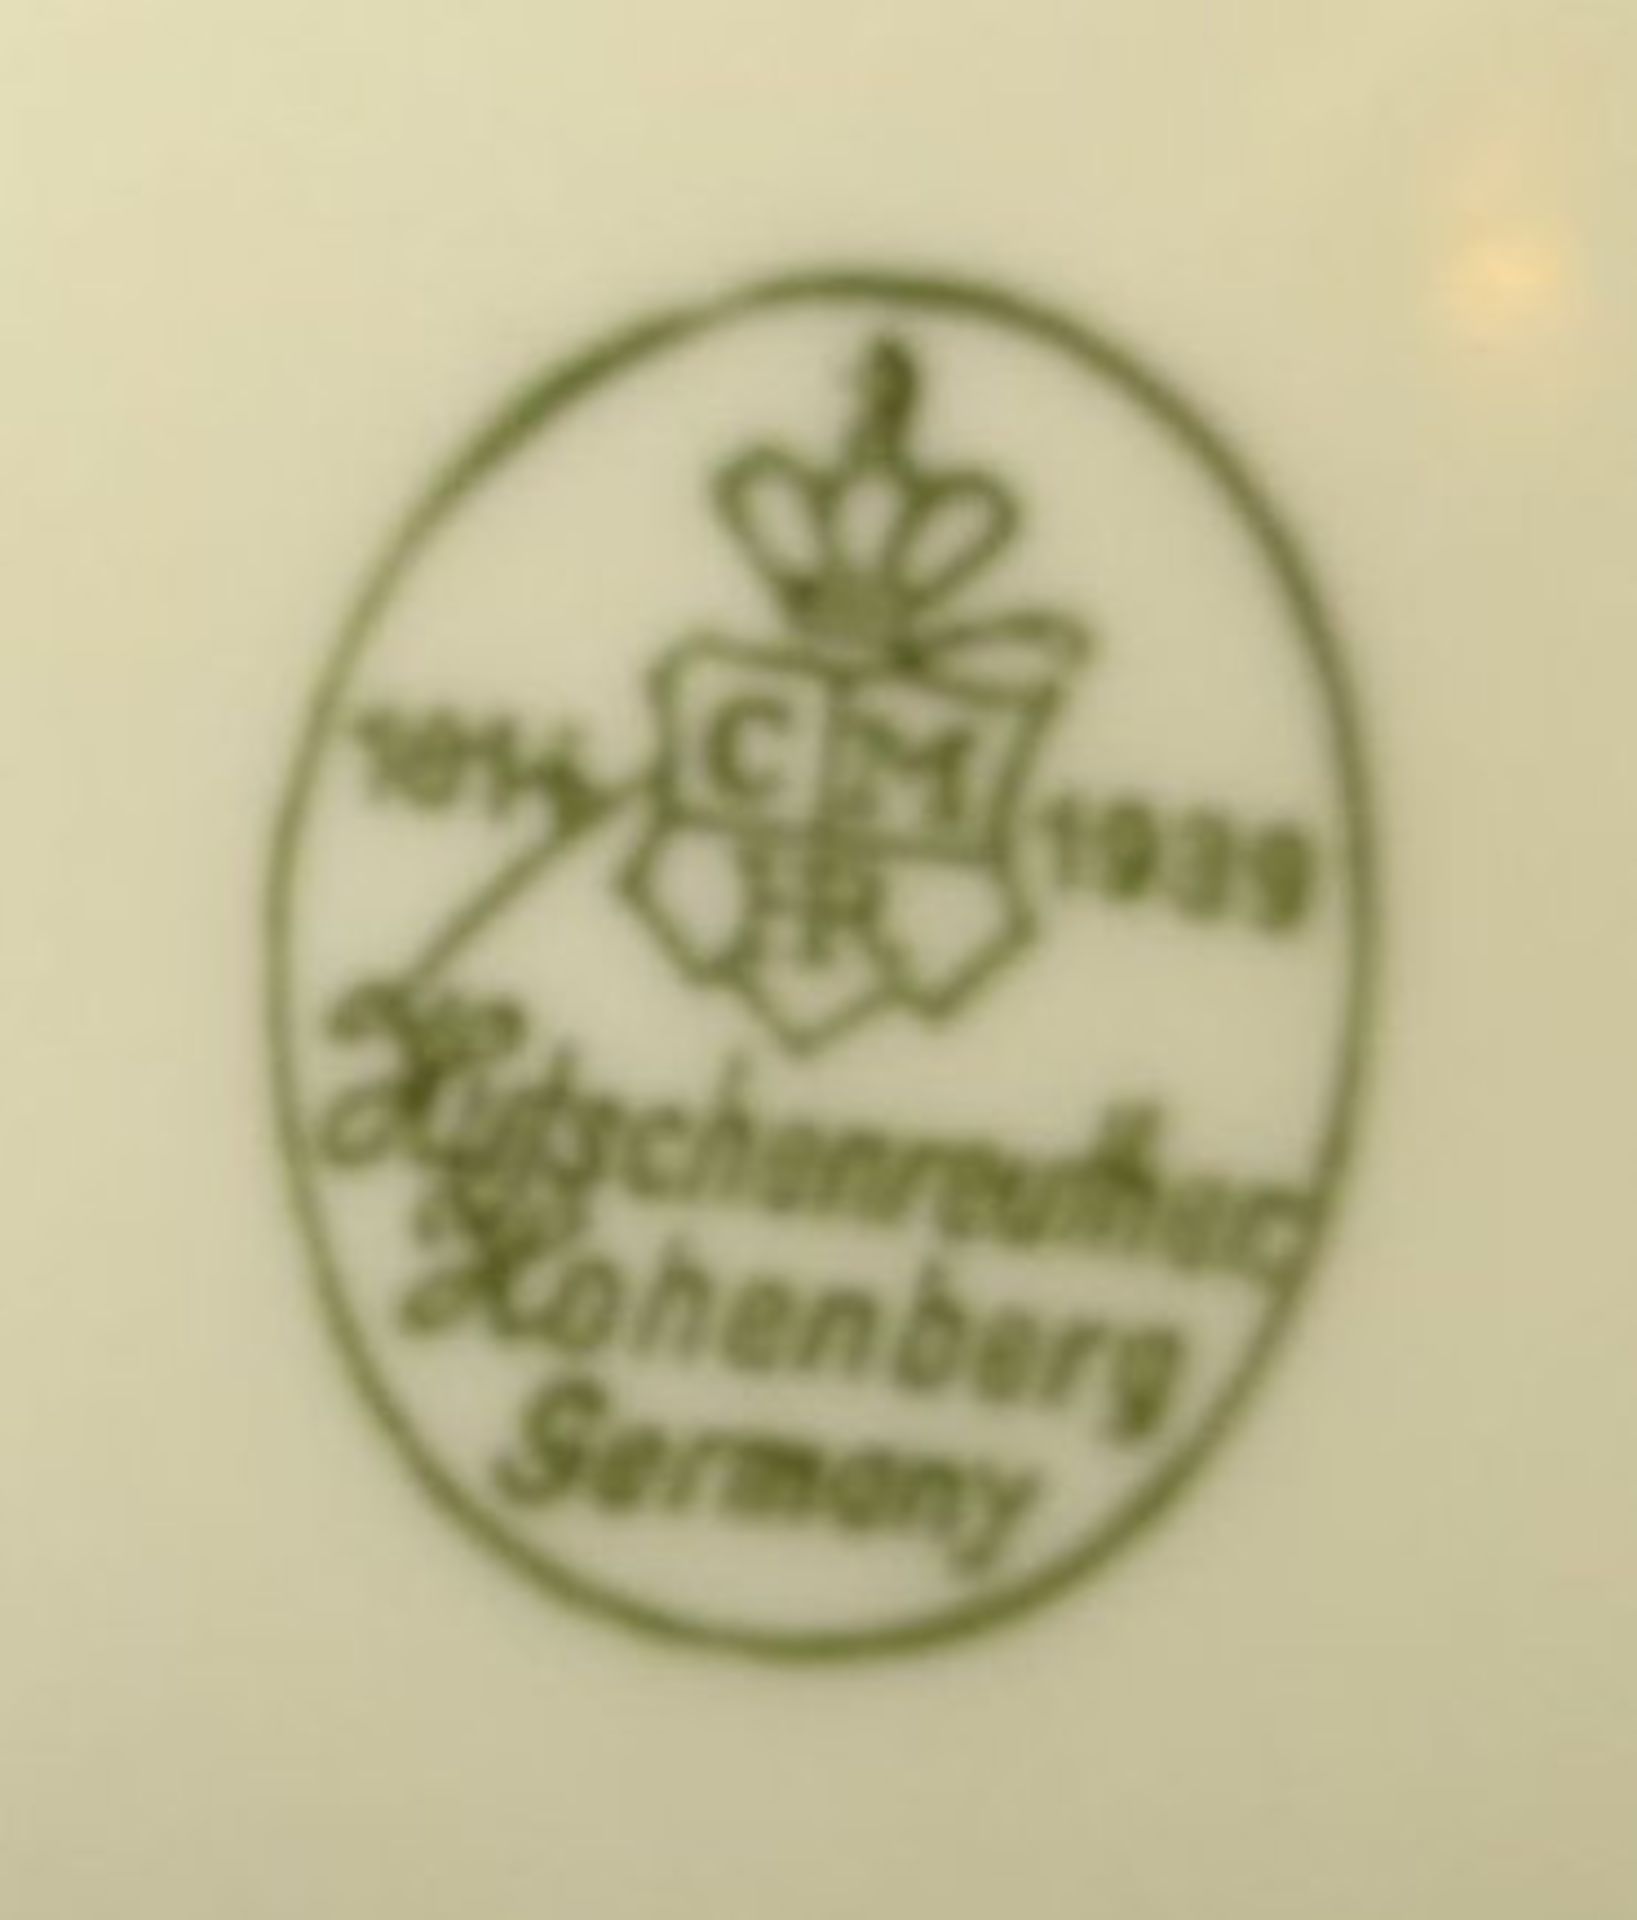 Speiseservice "Hutschenreuther" Jubil. Marke 1939, 2 Deckel-Terrinen, 4 ovale Platten, 4 runde Schü - Image 4 of 4